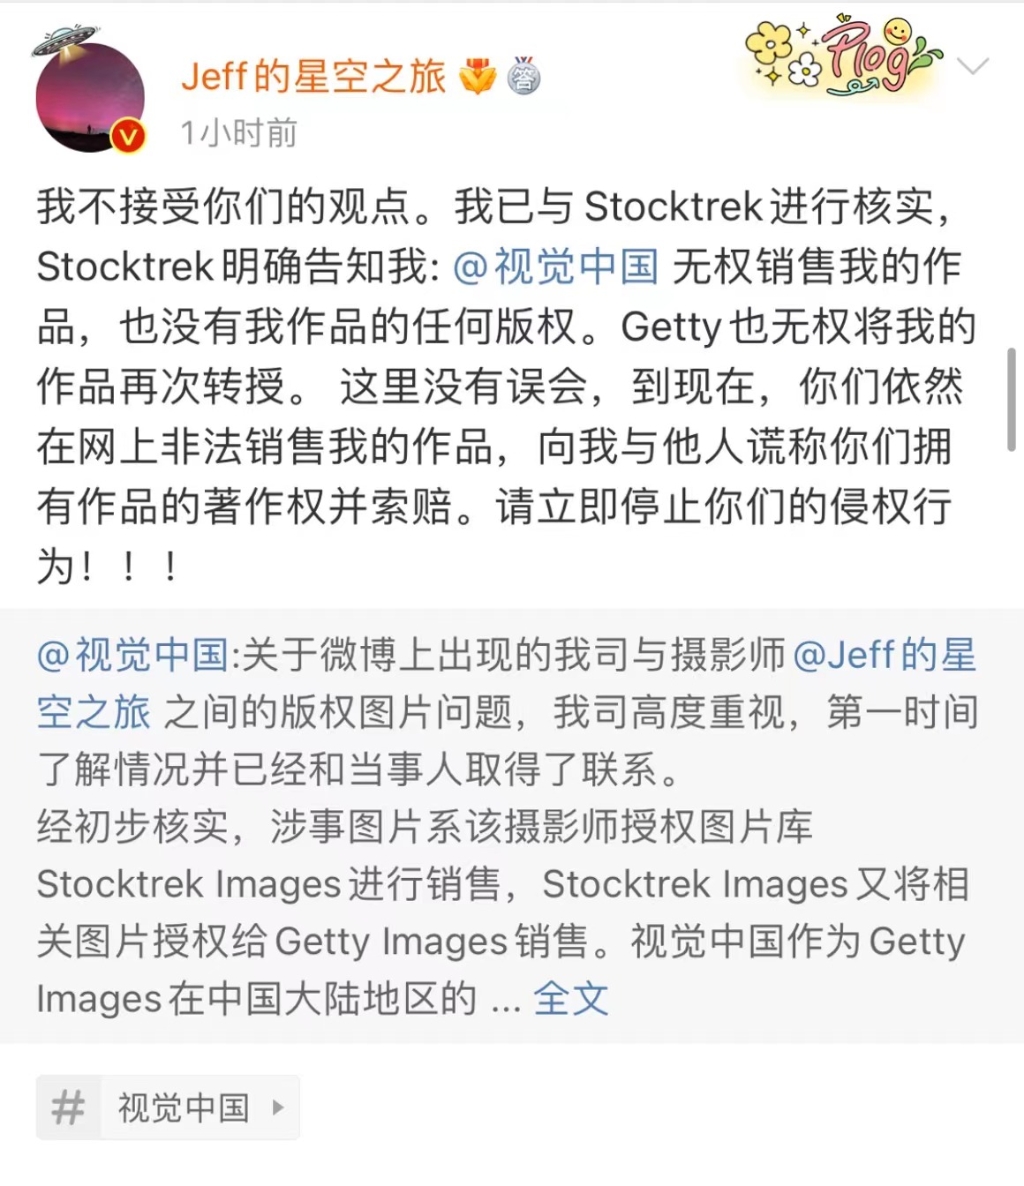 视觉中国回应告摄影师侵权：涉事图片销售授权链条清晰完整，会妥善处理相关误解